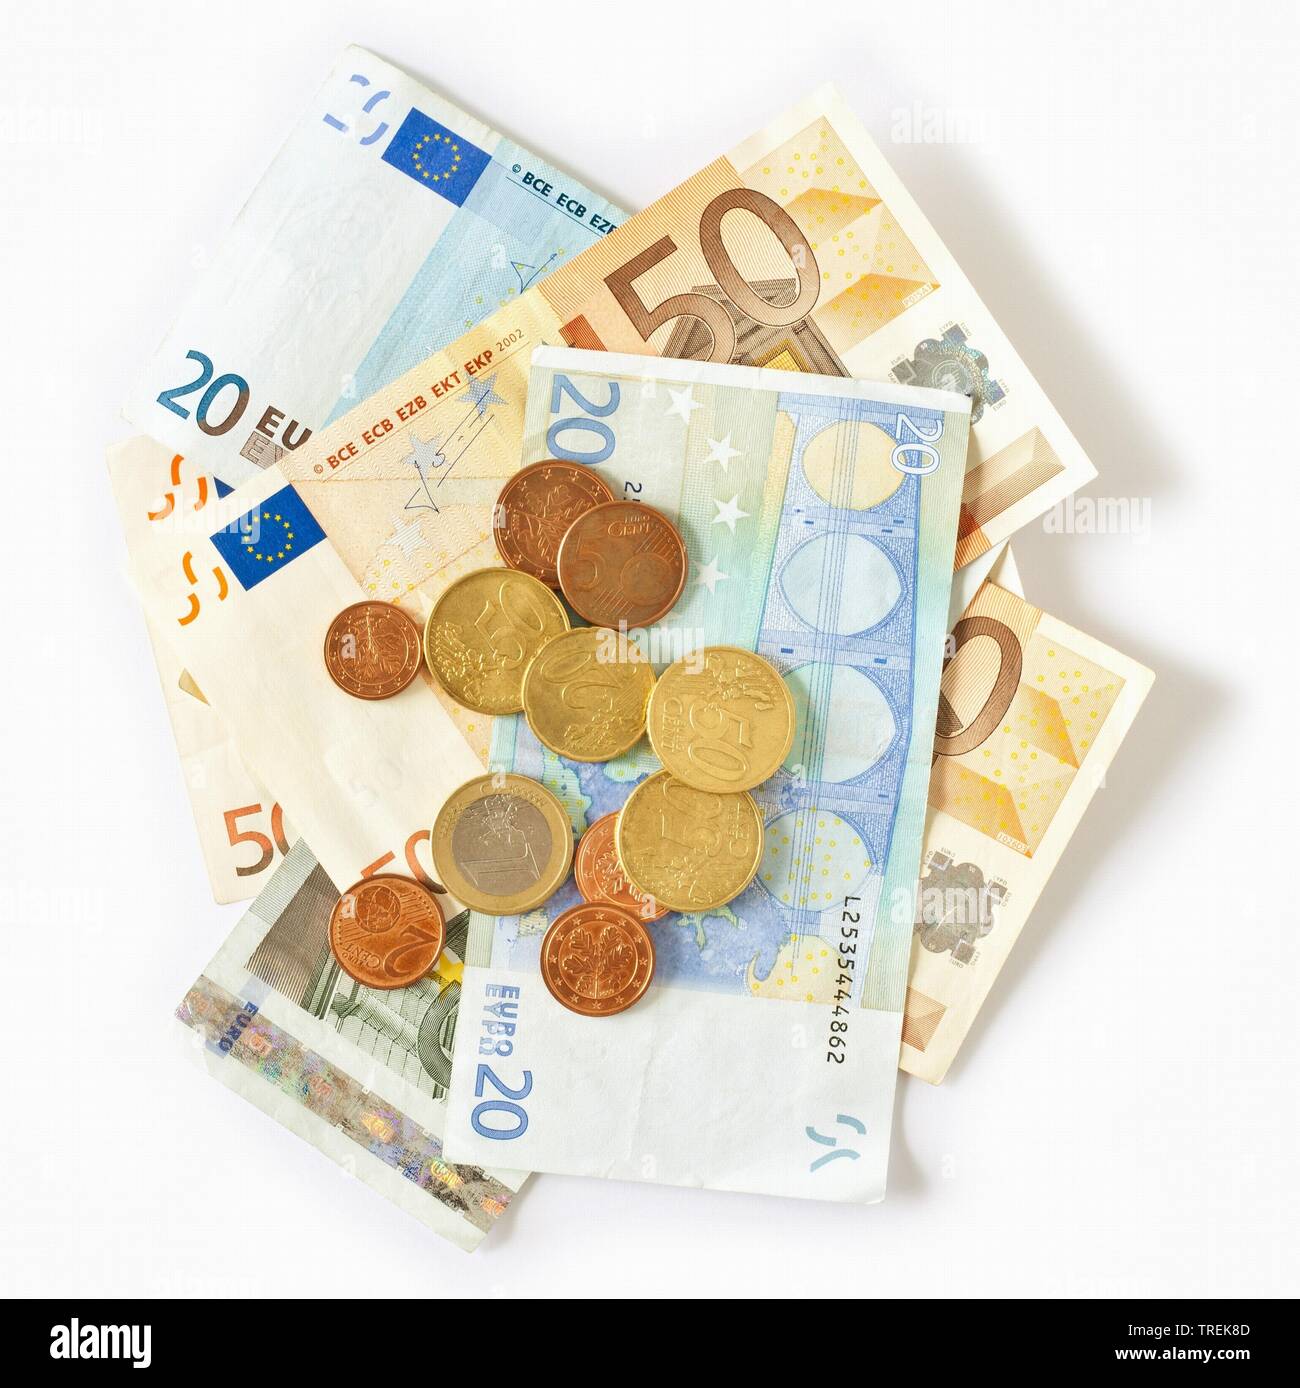 L'introduction des billets et pièces en euros contre fond blanc Banque D'Images